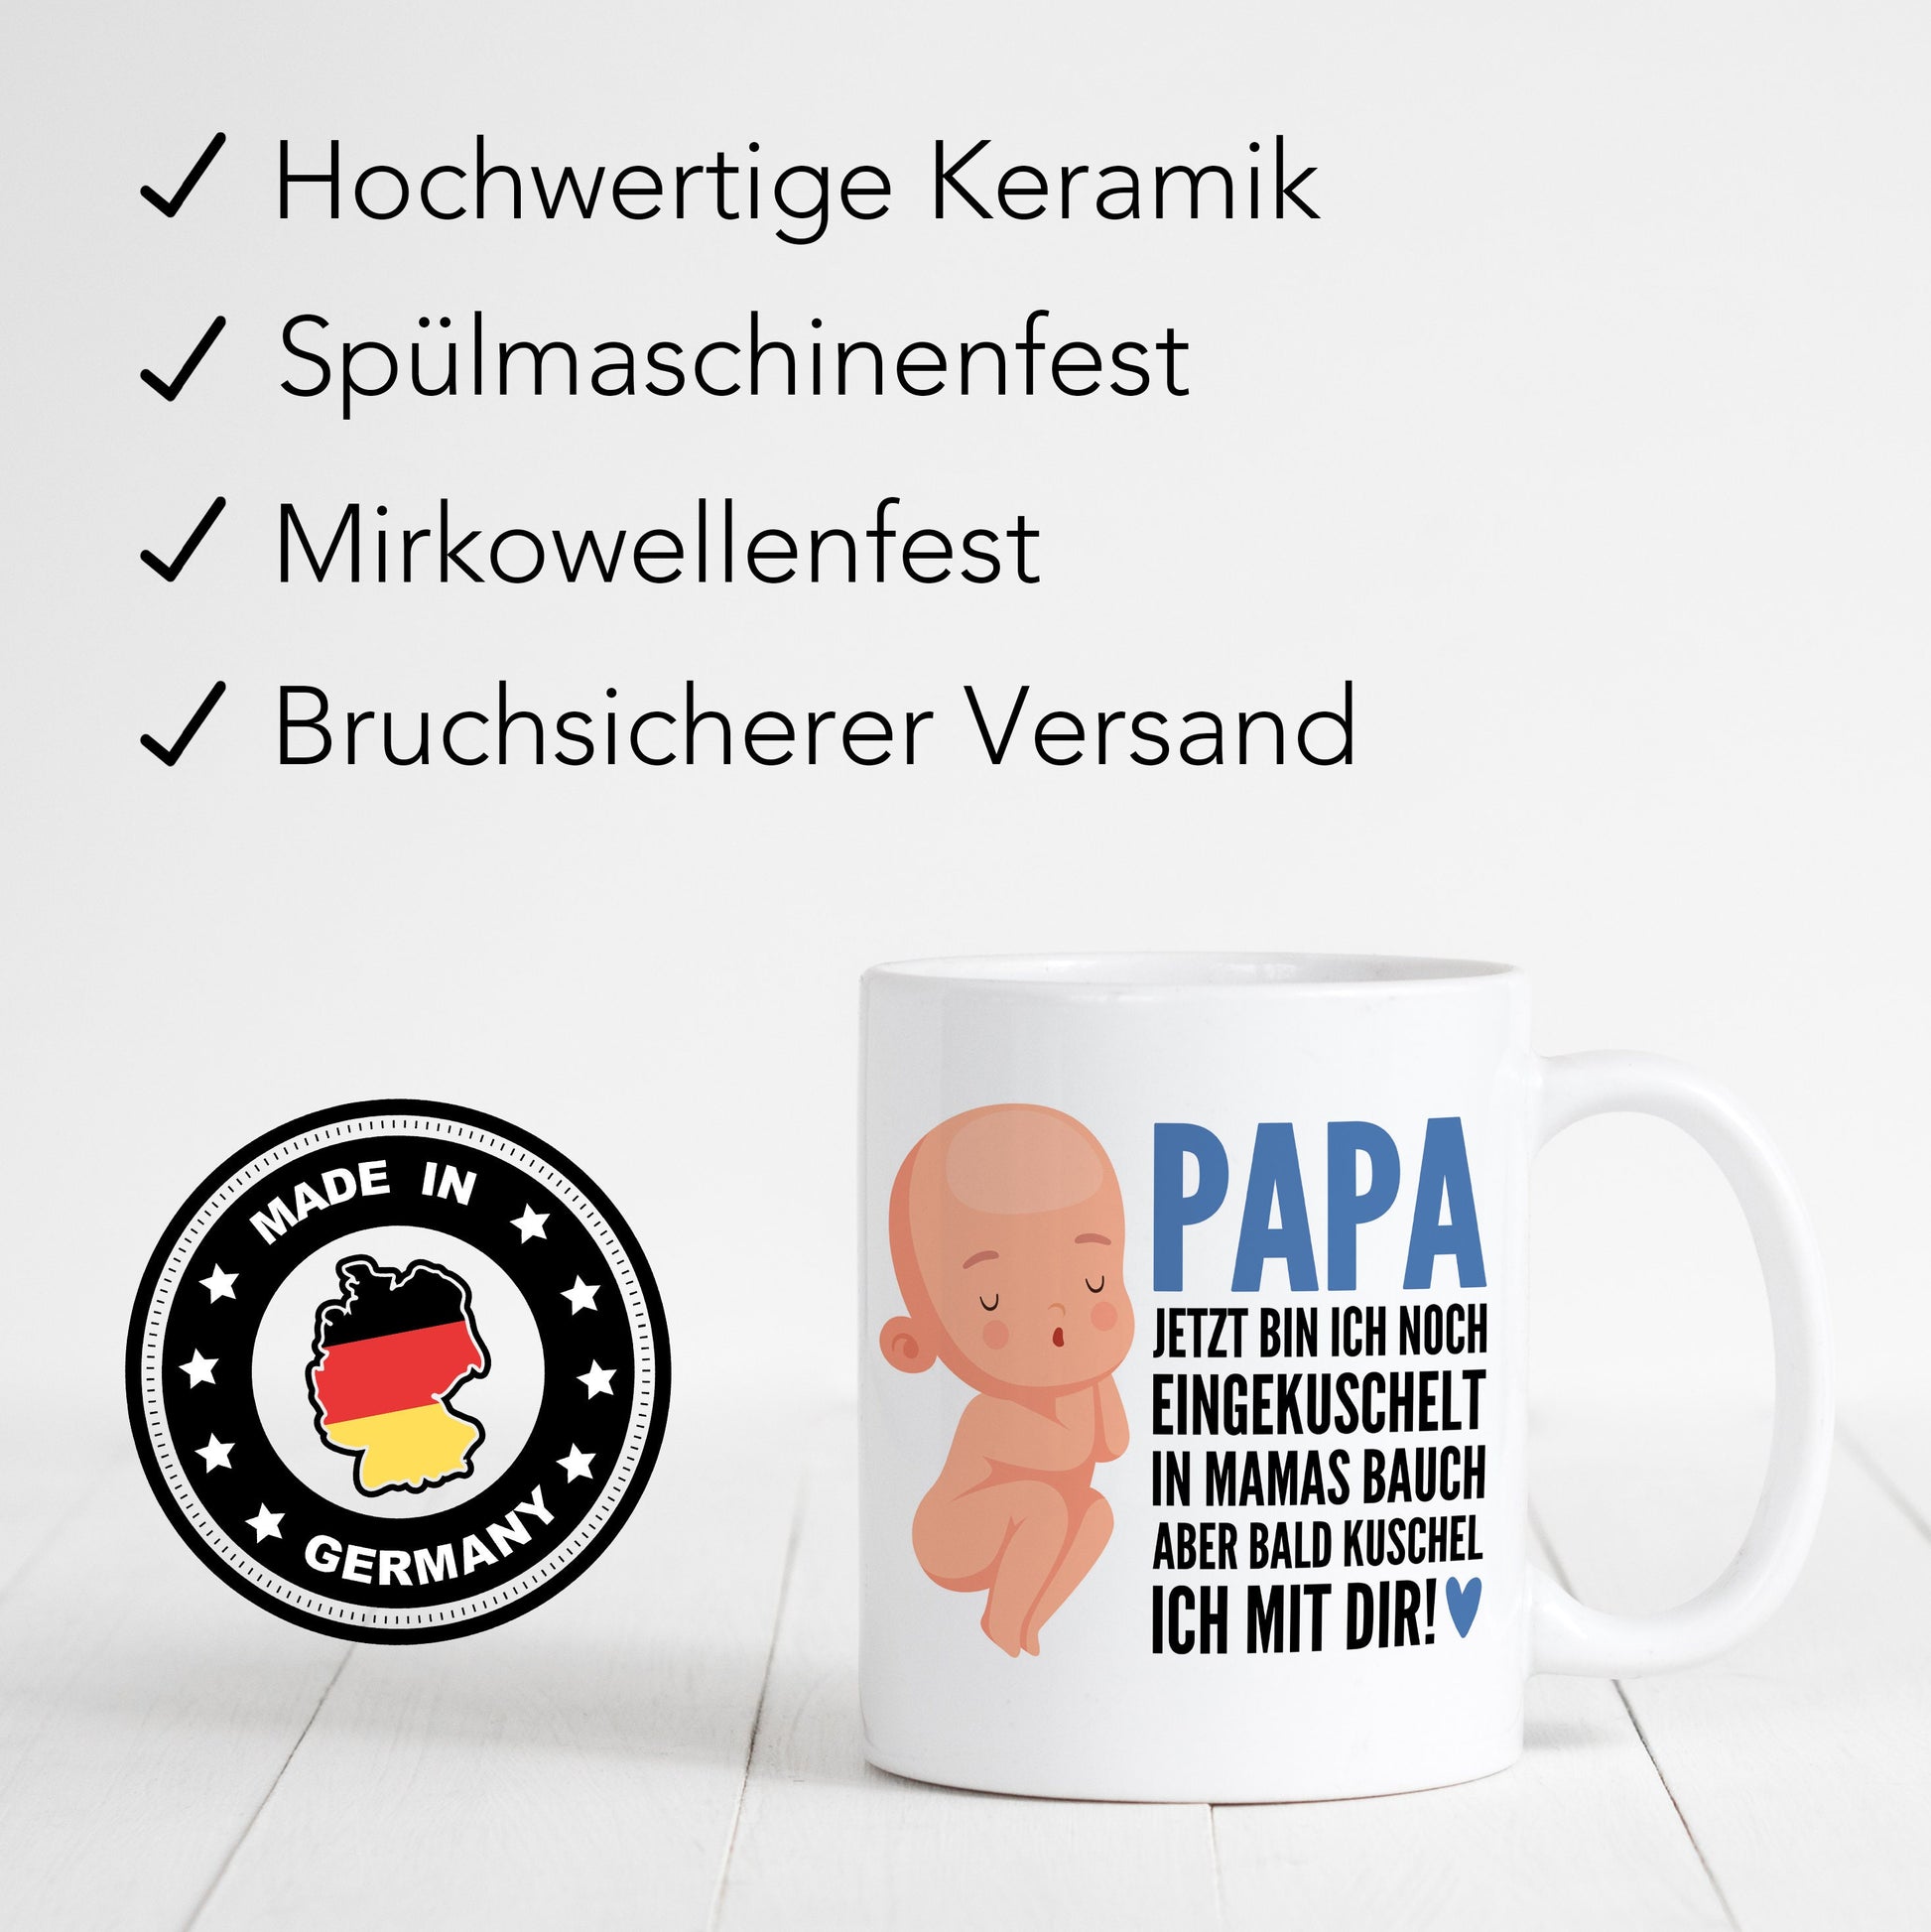 Schwangerschaft verkünden Papa Du wirst Papa Tasse Vater Kaffeetasse mit Spruch Baby im Bauch Vatertag Geschenk